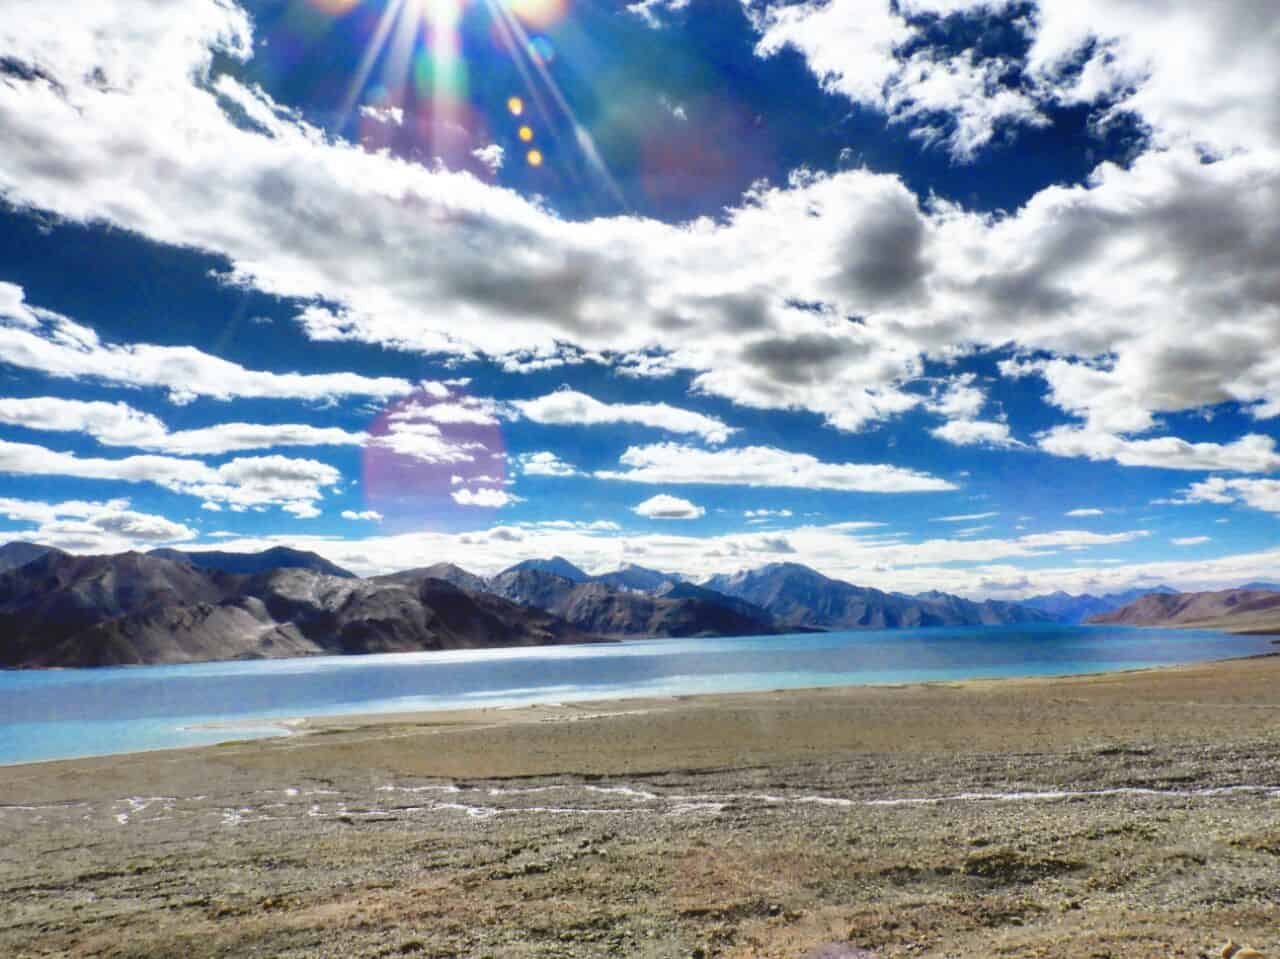 2018 Travel Resolutions - Digital Detox at Pangong Lake, Ladakh